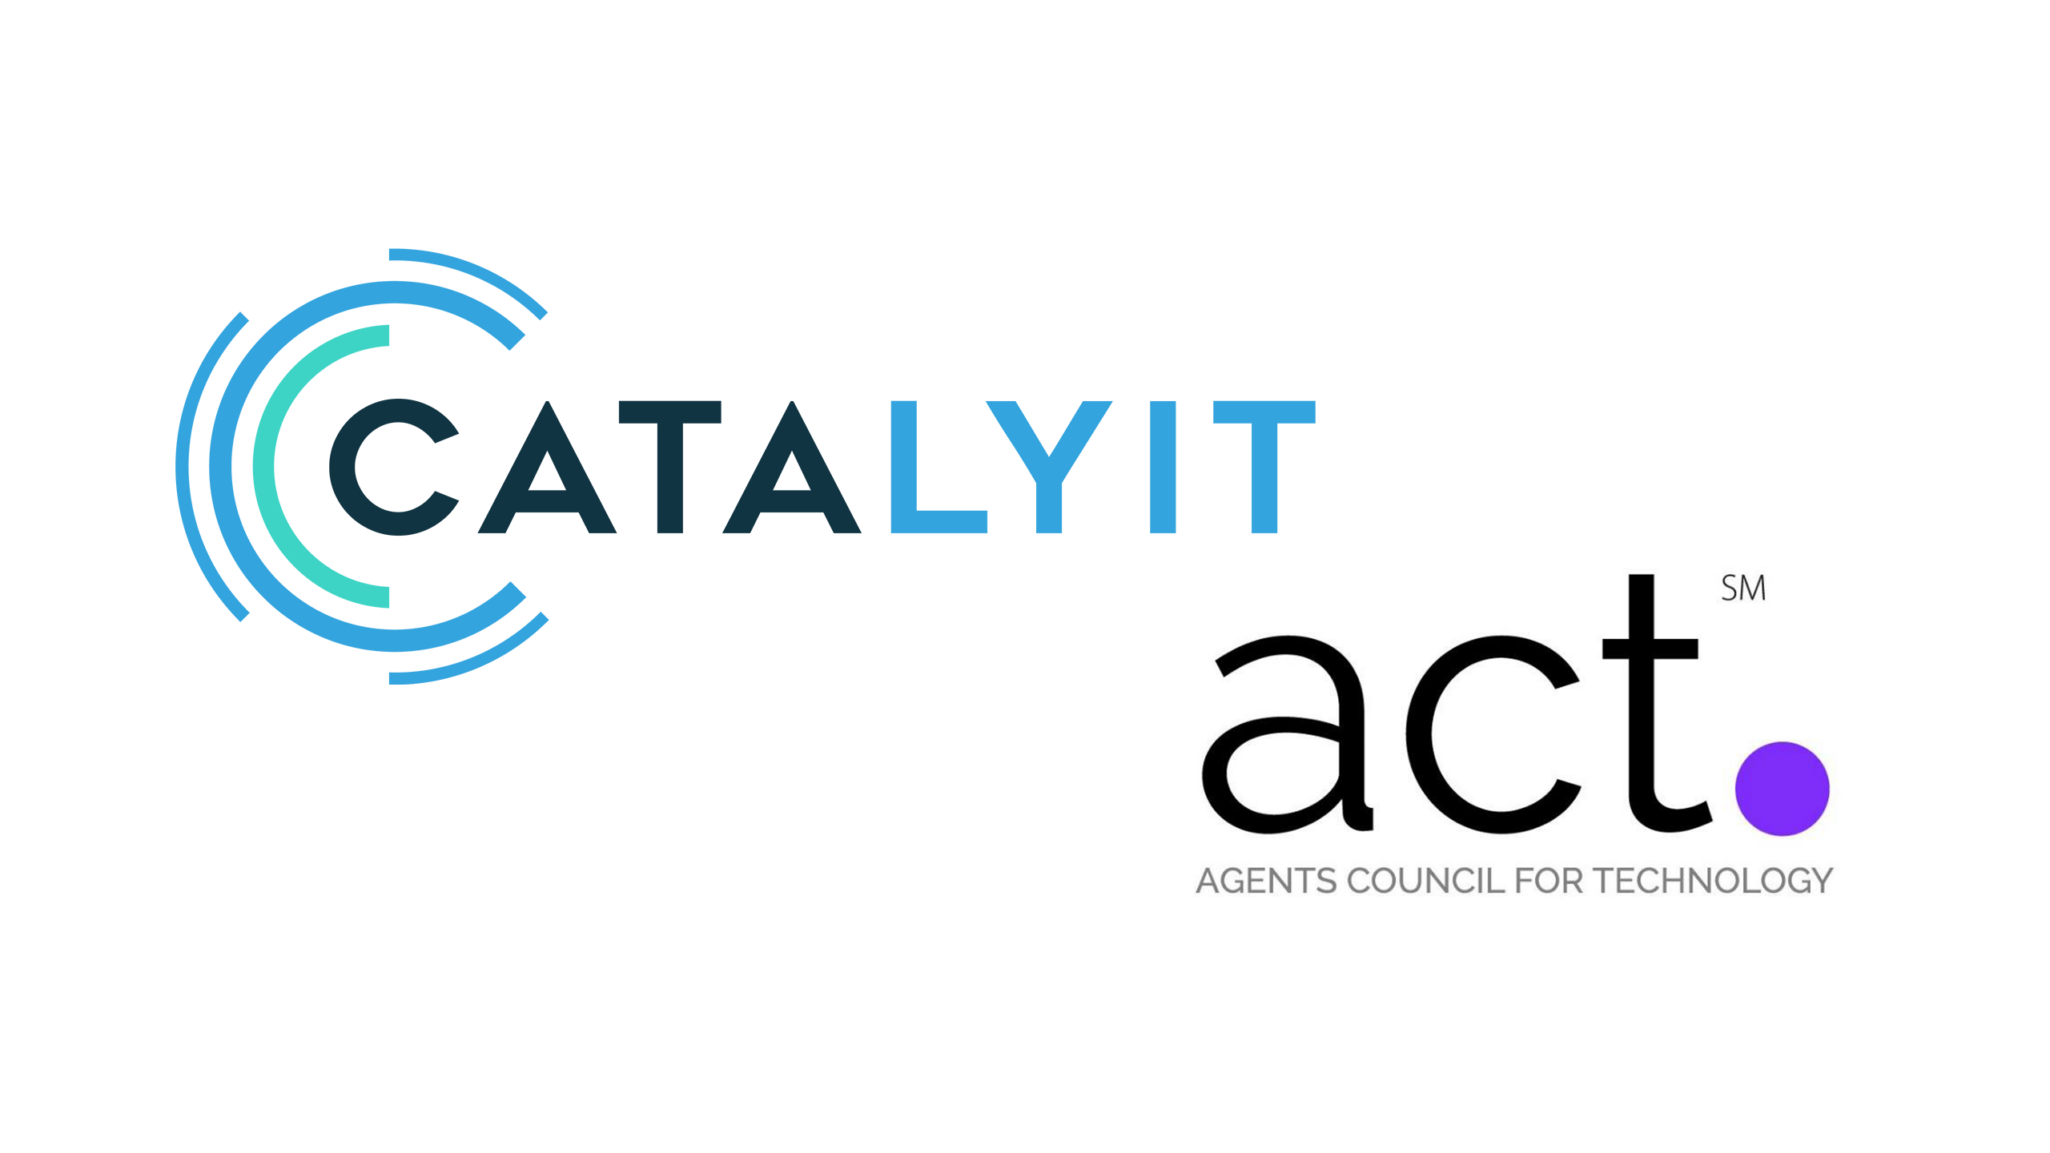 Catalyit + ACT